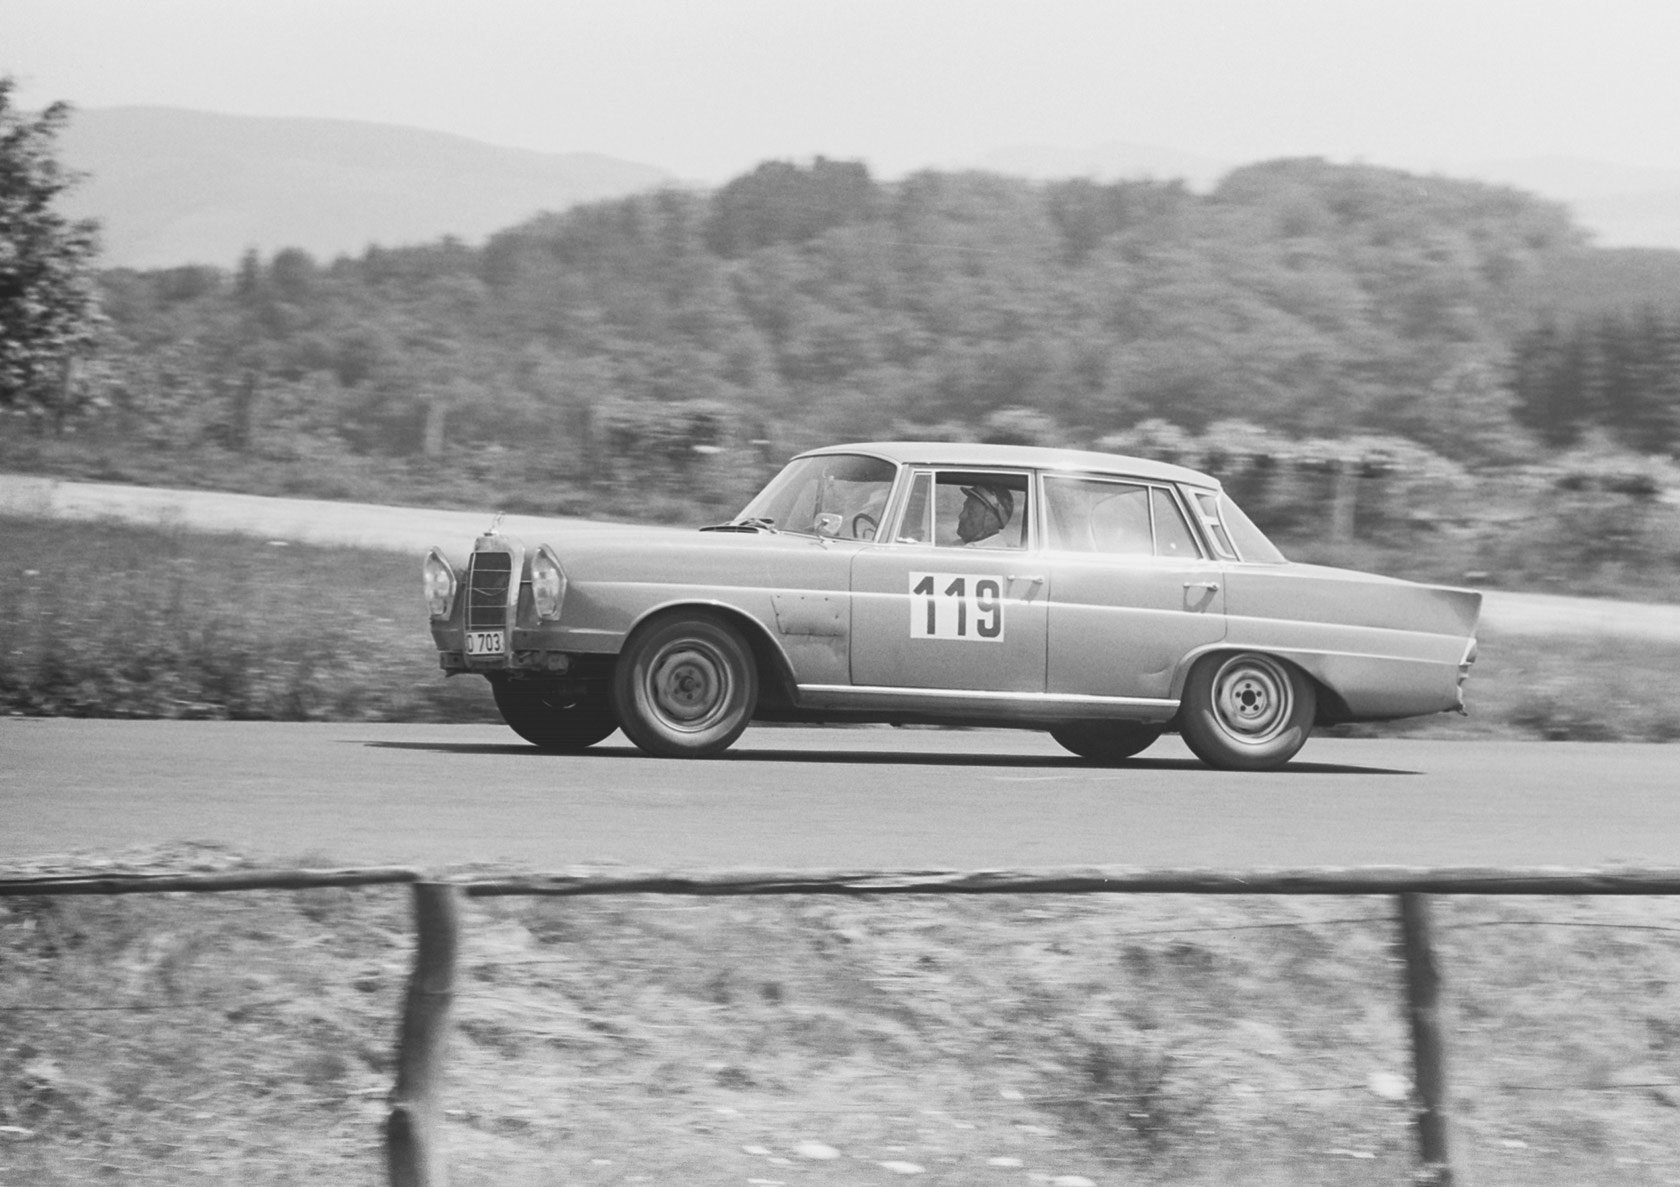 Internationales ADAC 6-Stunden-Tourenwagen-Rennen auf dem Nürburgring 1963. Es war der erste Lauf zur European Touring Car Challenge (ETCC)